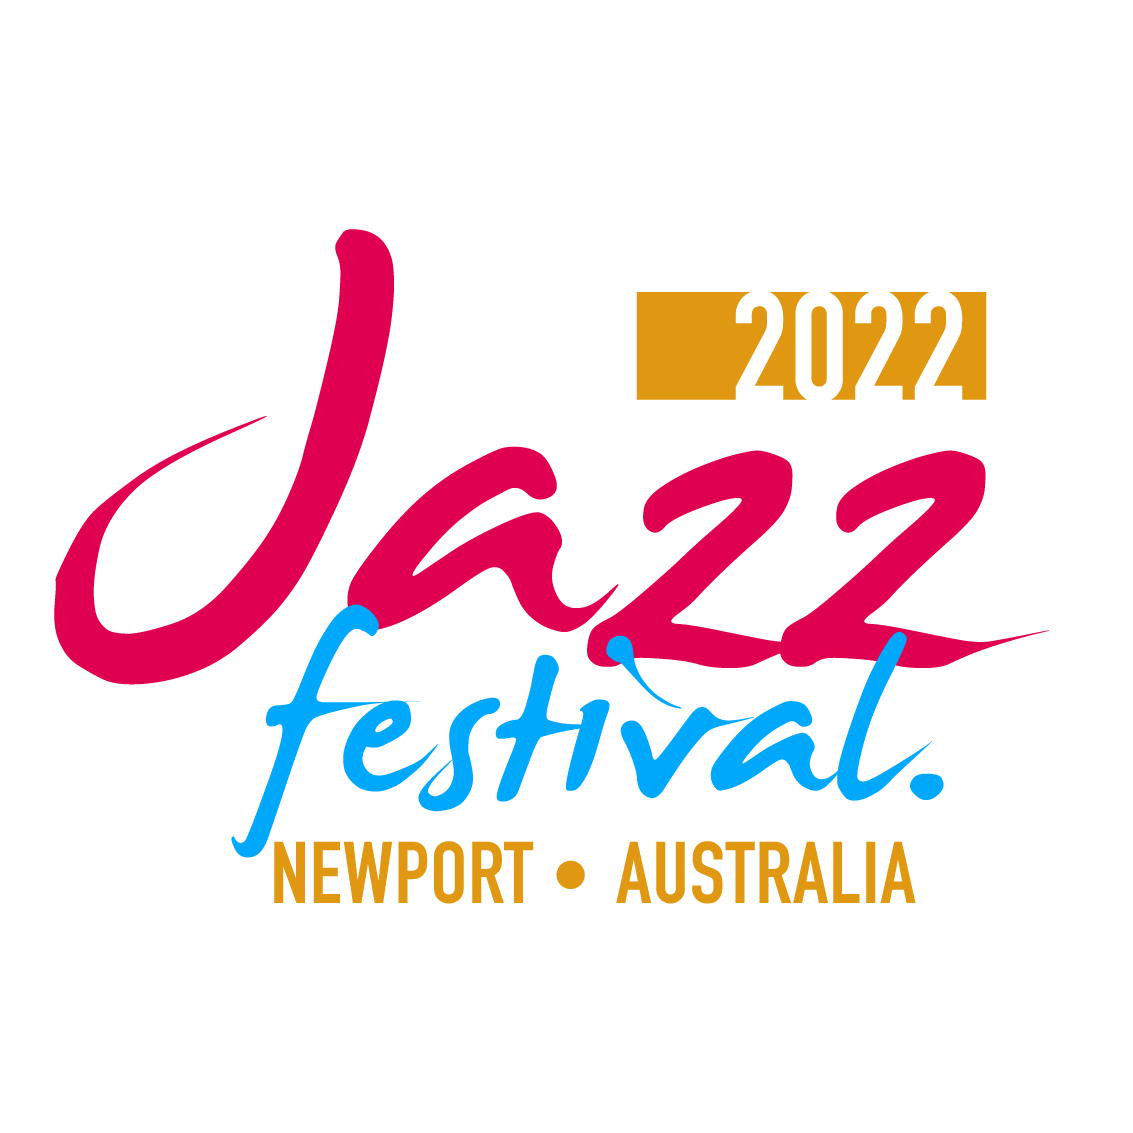 Newport Jazz Festival 2022 Visit Hobsons Bay